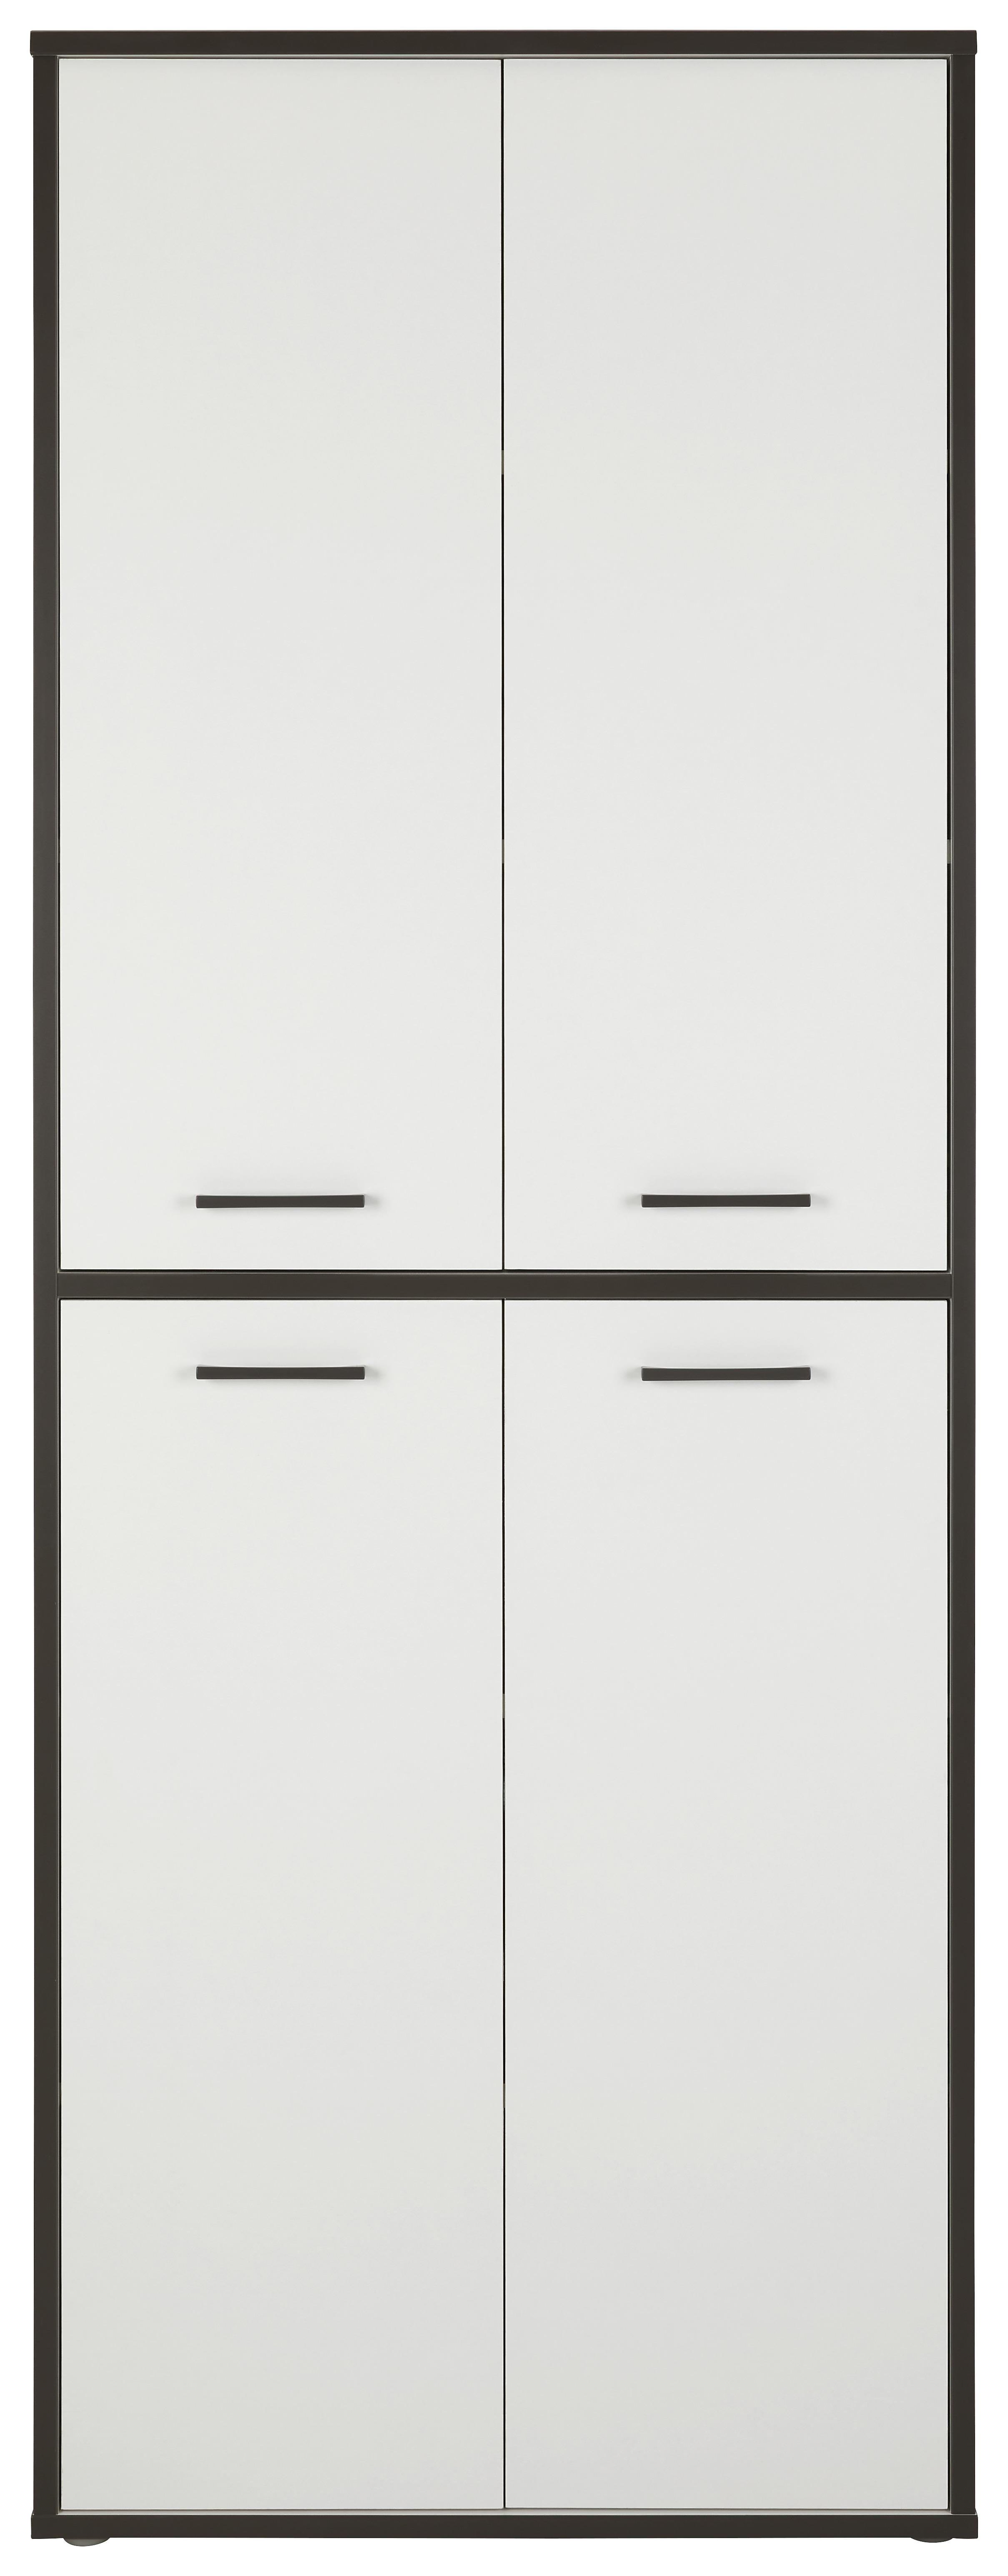 Víceúčelová Skříň Keflavik -Exklusiv- - šedá/bílá, Moderní, kompozitní dřevo/plast (84,5cm) - Modern Living